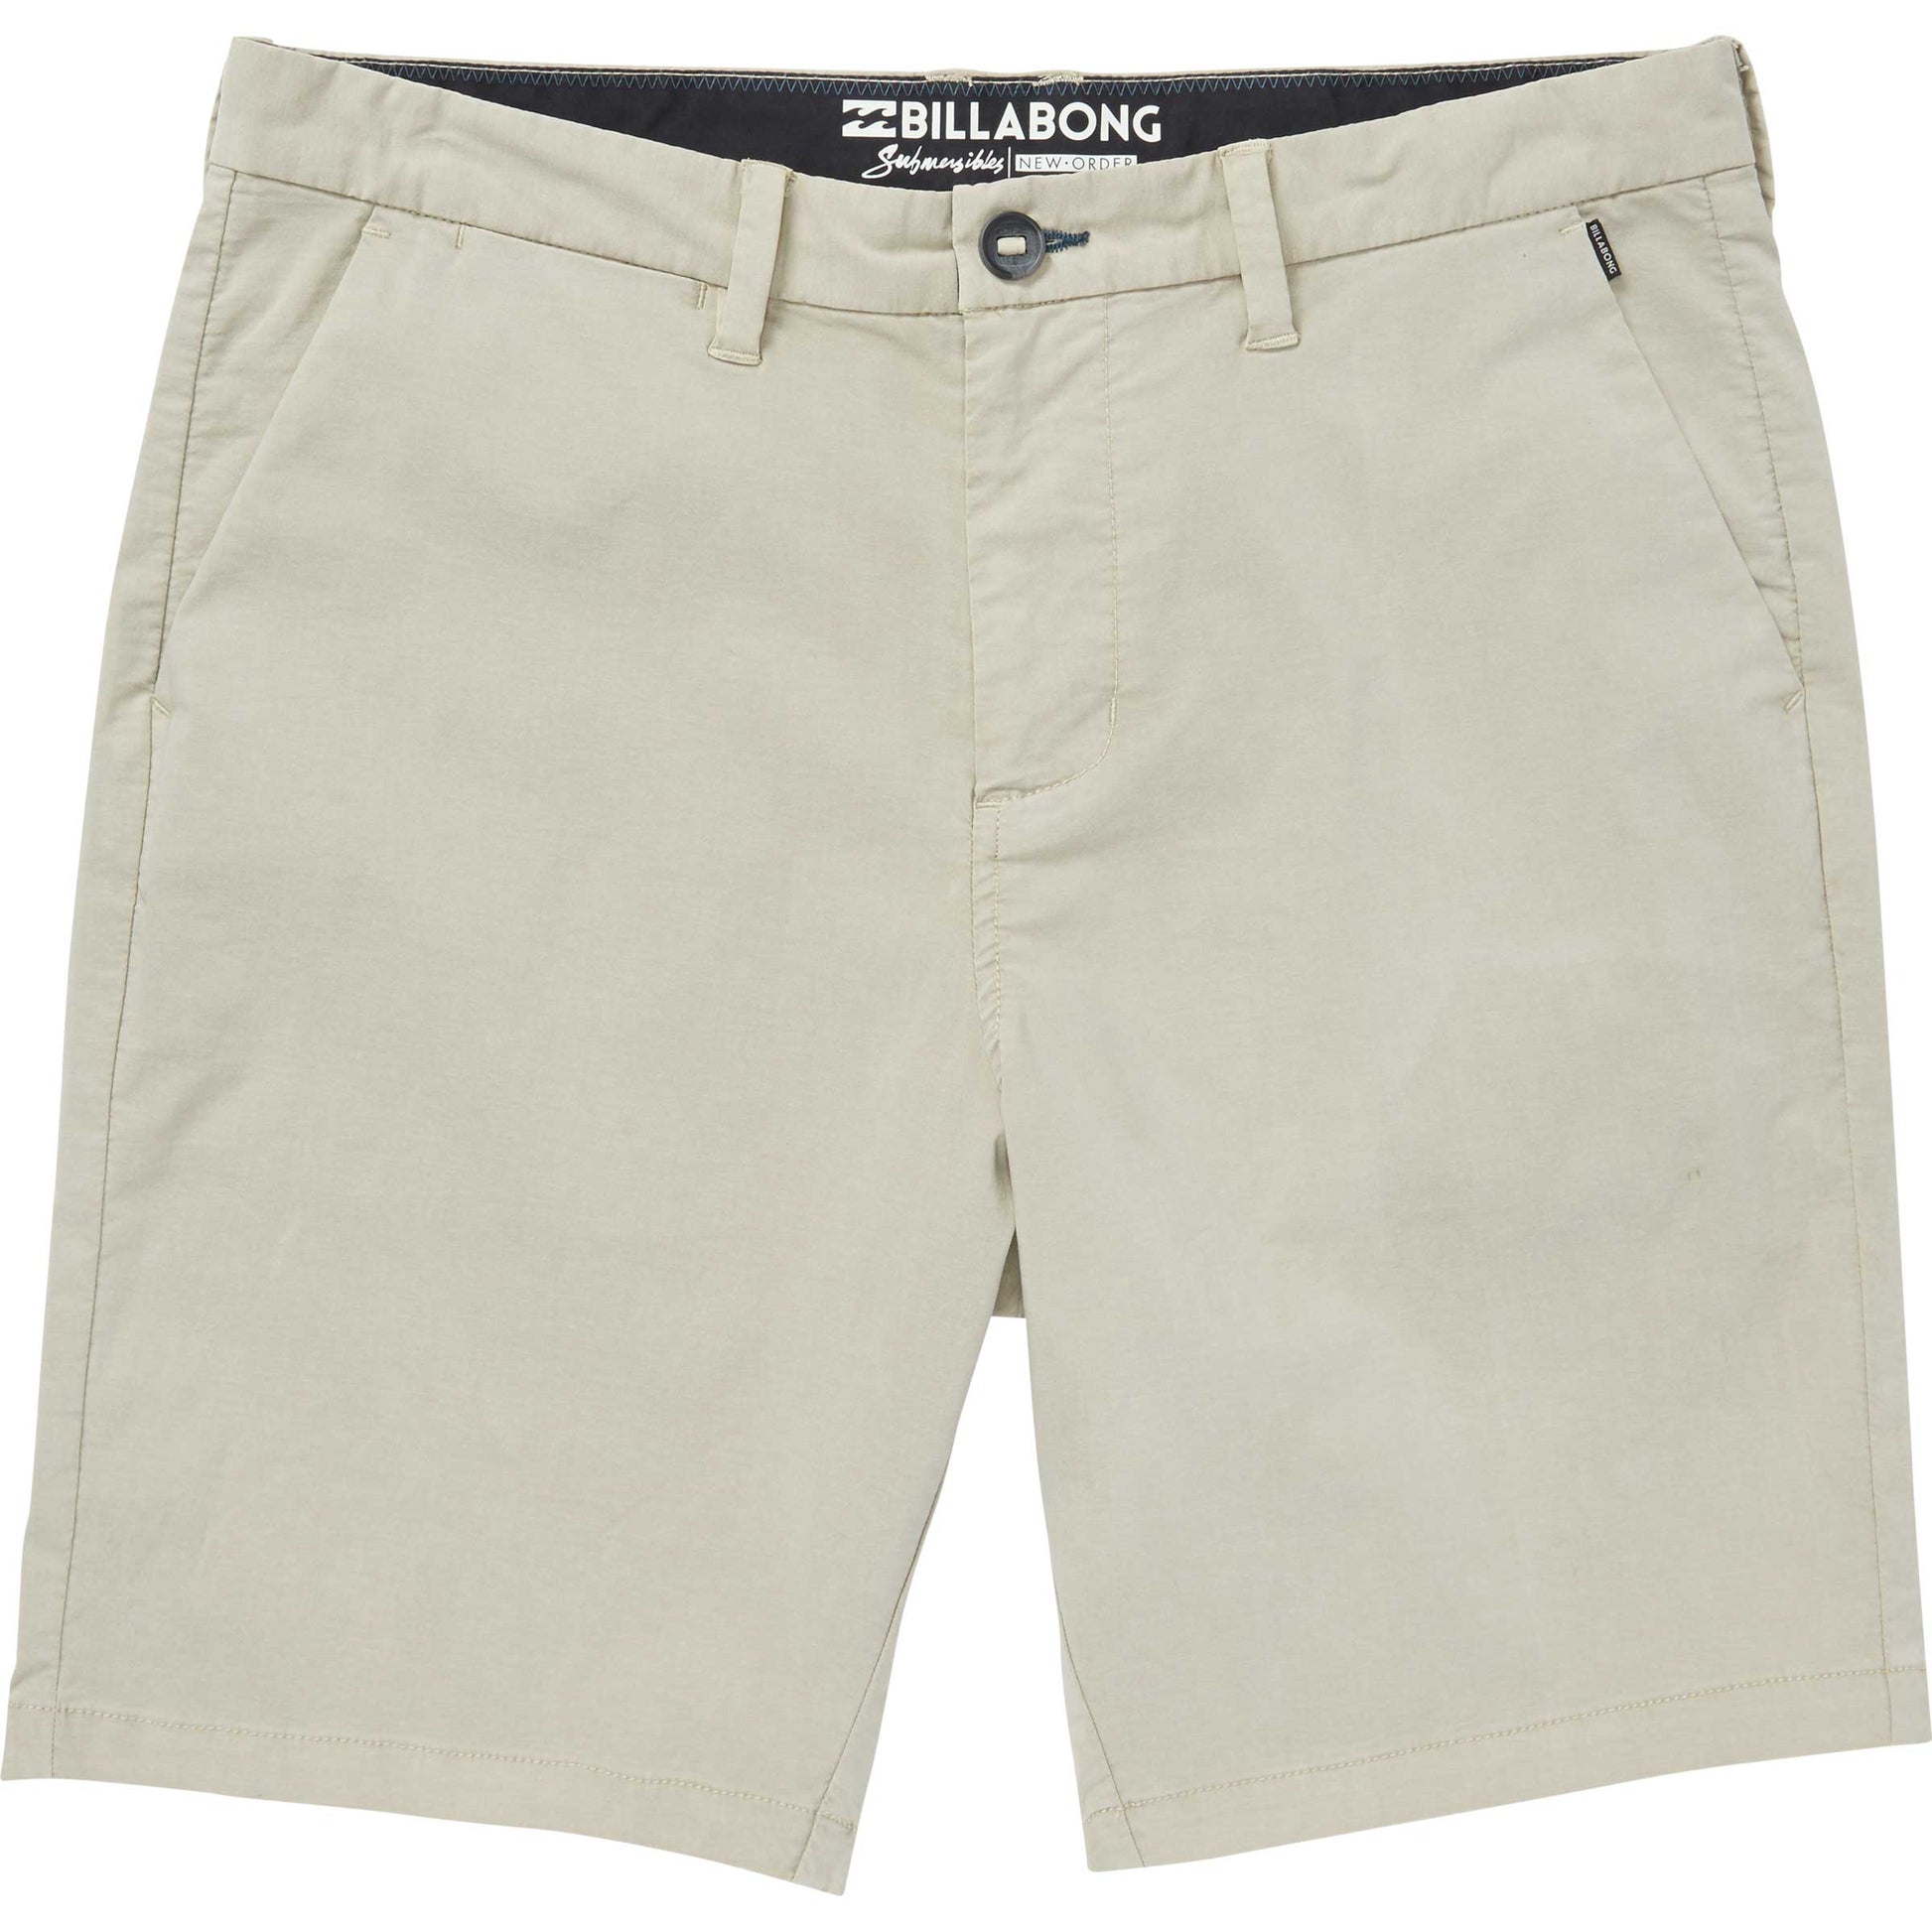 Billabong New Order X Overdye Shorts - Chino Mens Shorts